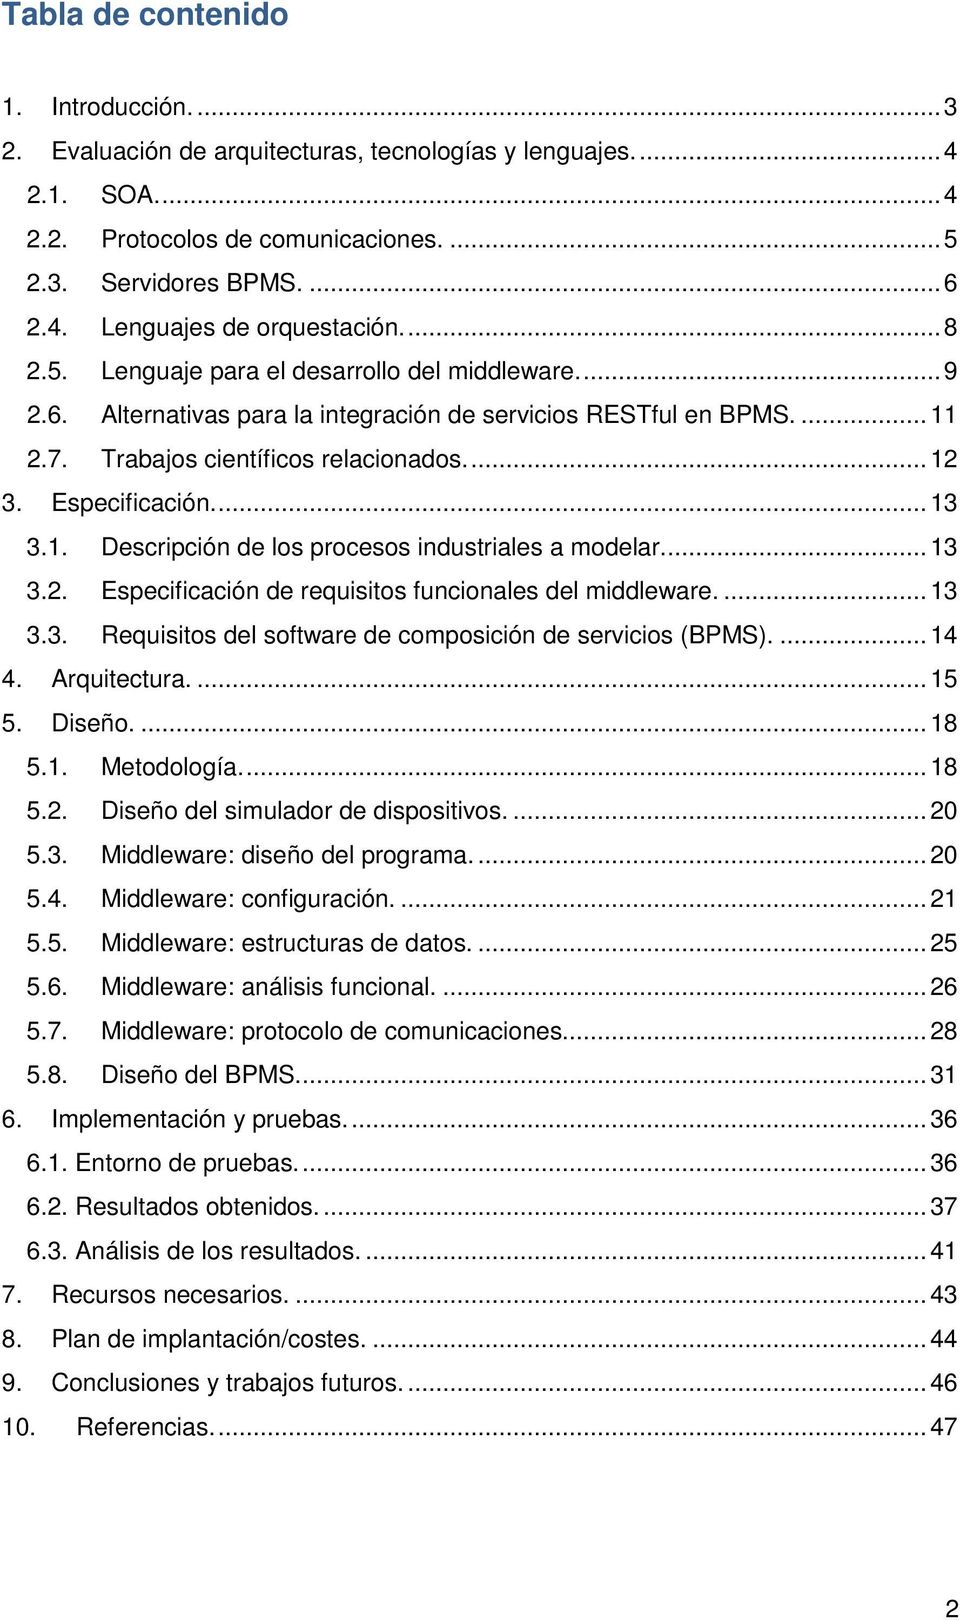 ... 13 3.1. Descripción de los procesos industriales a modelar.... 13 3.2. Especificación de requisitos funcionales del middleware.... 13 3.3. Requisitos del software de composición de servicios (BPMS).